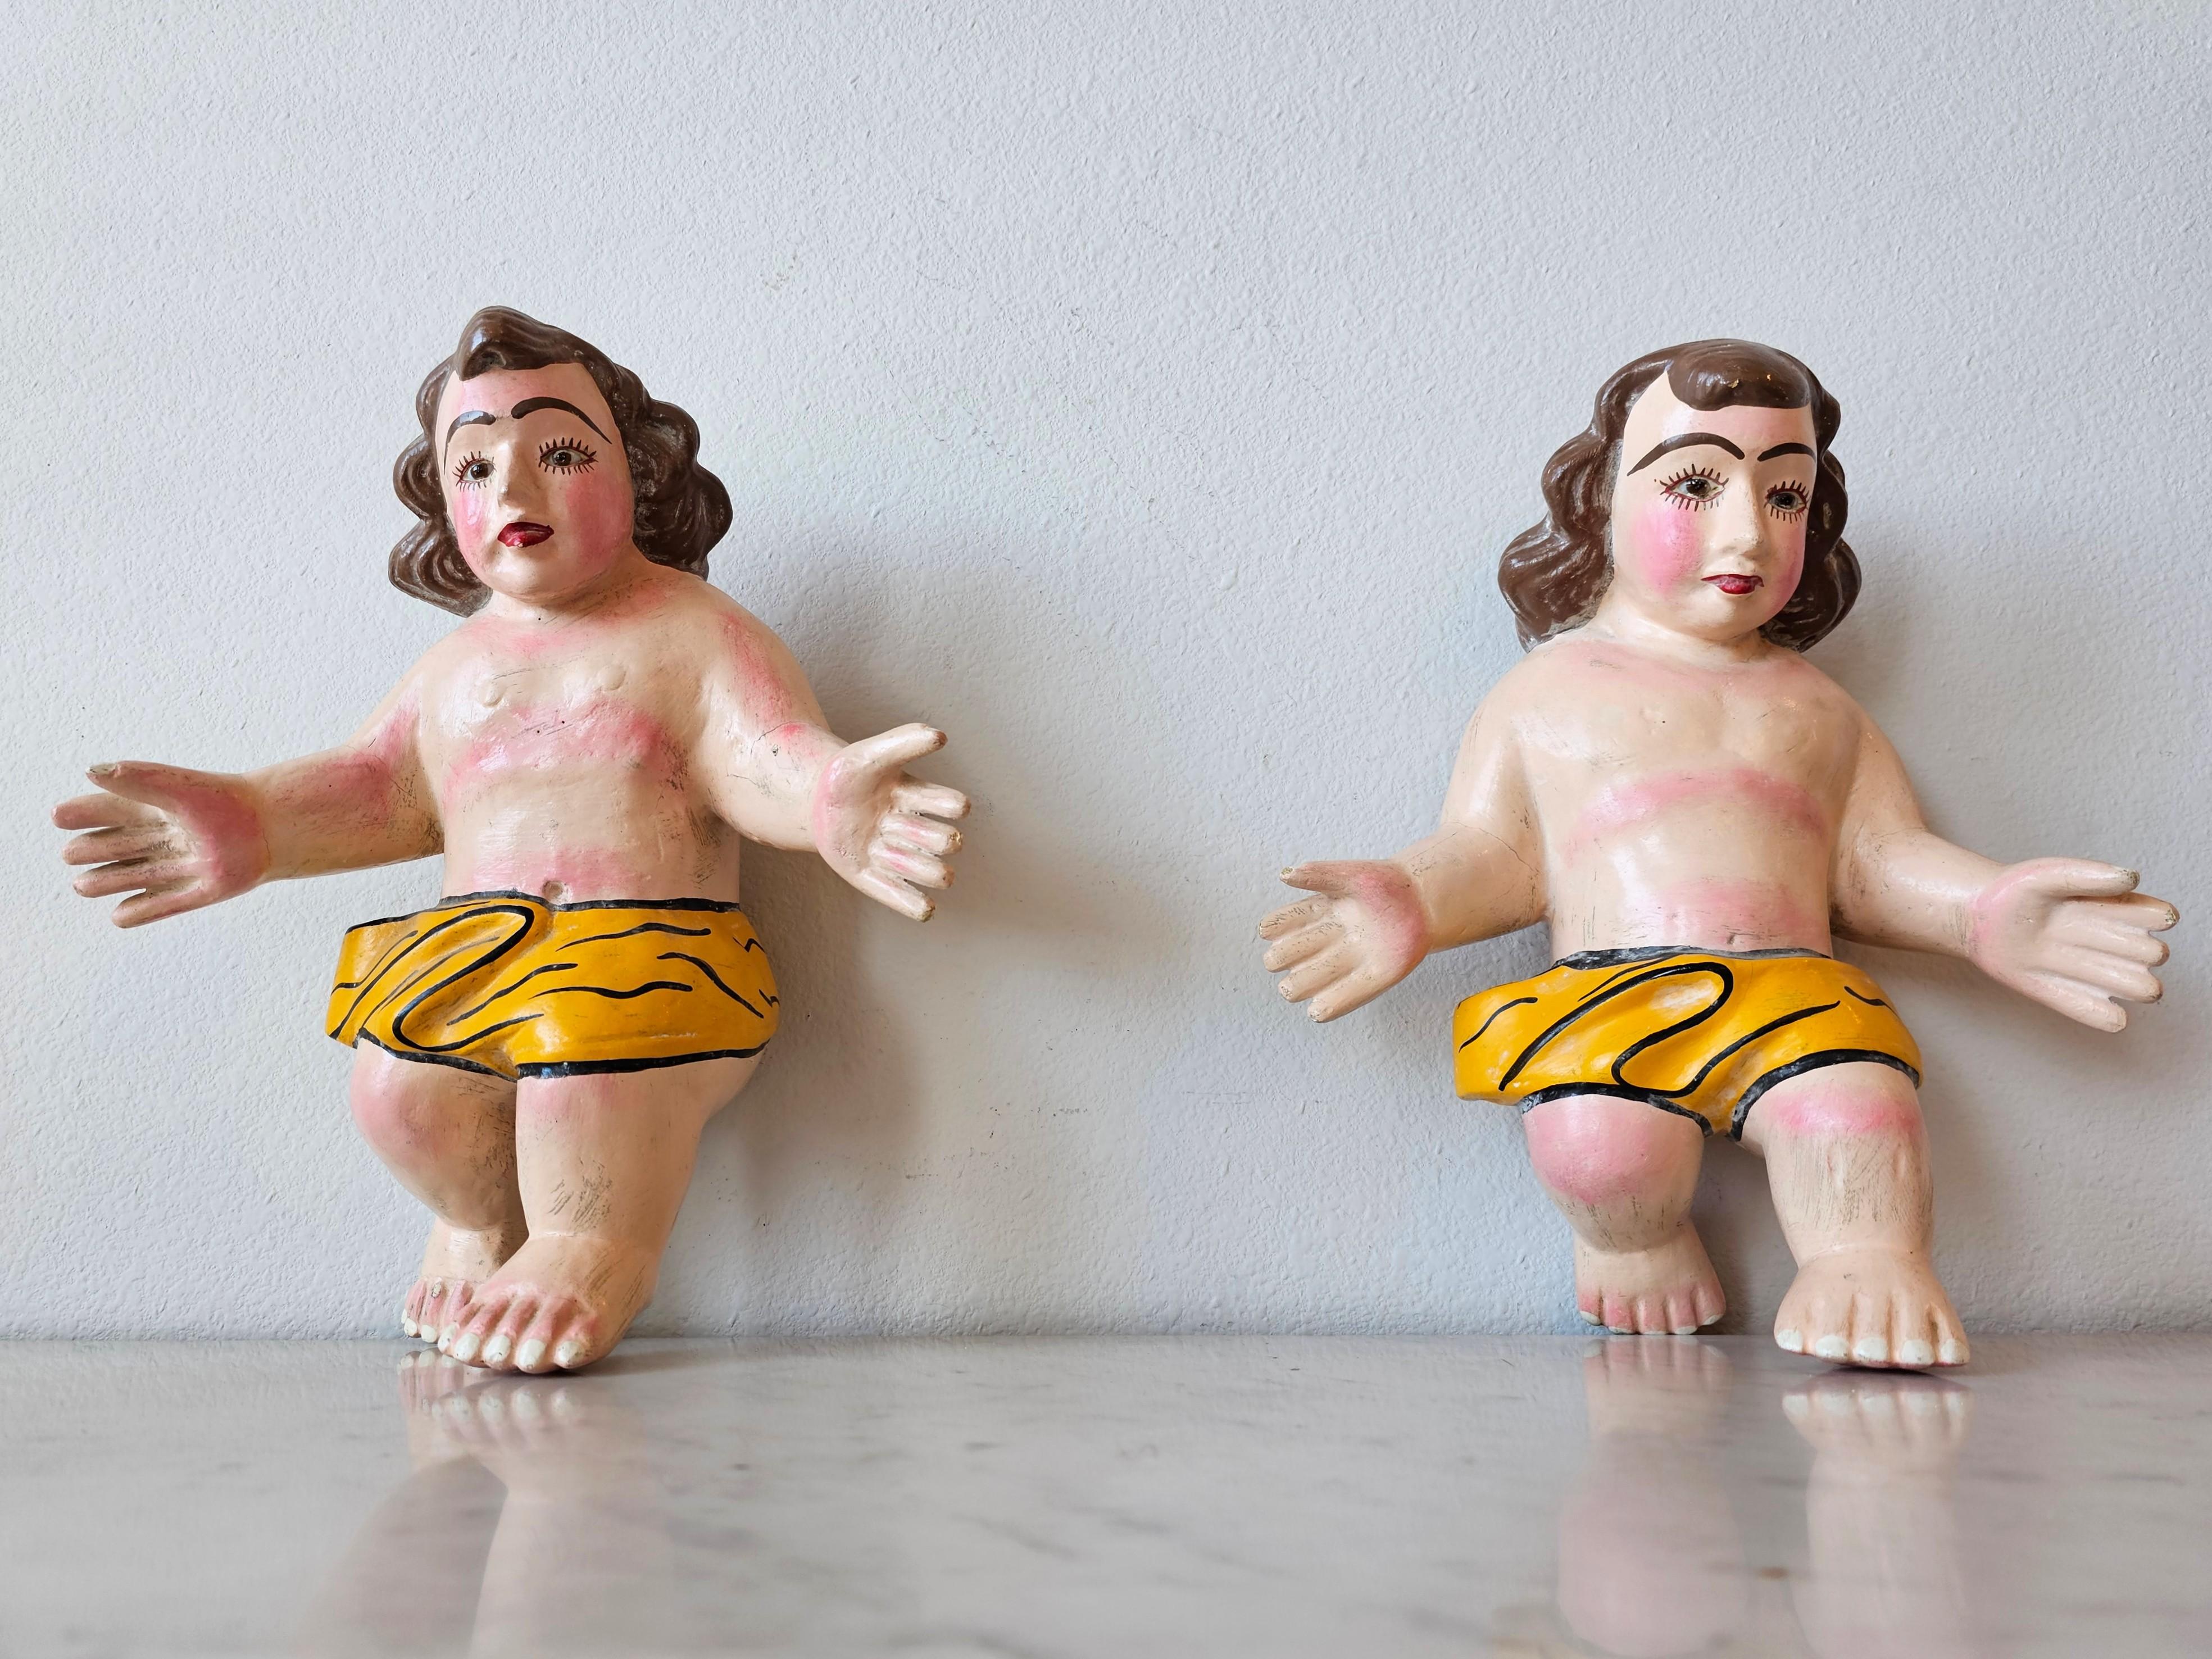 Charmante paire de figurines religieuses de l'Enfant Jésus, sculptées et peintes à la main, datant de l'art populaire mexicain, vers 1960.

Fabriqué à la main au Mexique, milieu du 20e siècle, style baroque santo, représentant (2) figures de bébé